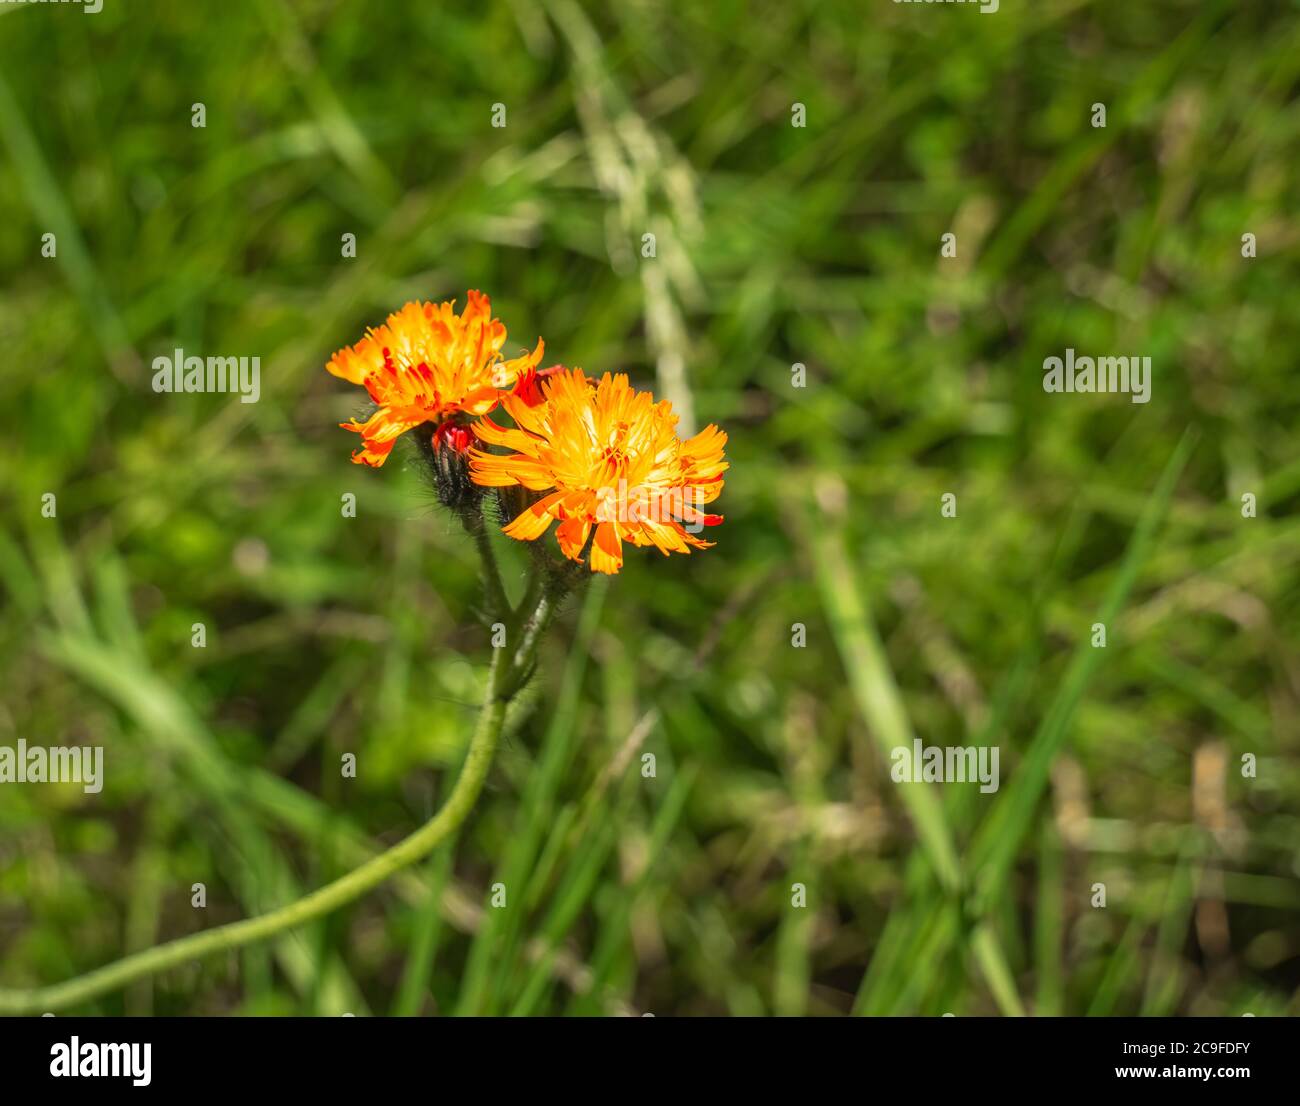 Alpine wild orange flower Pilosella aurantiaca or orange hawk bit with blurred background. Stock Photo